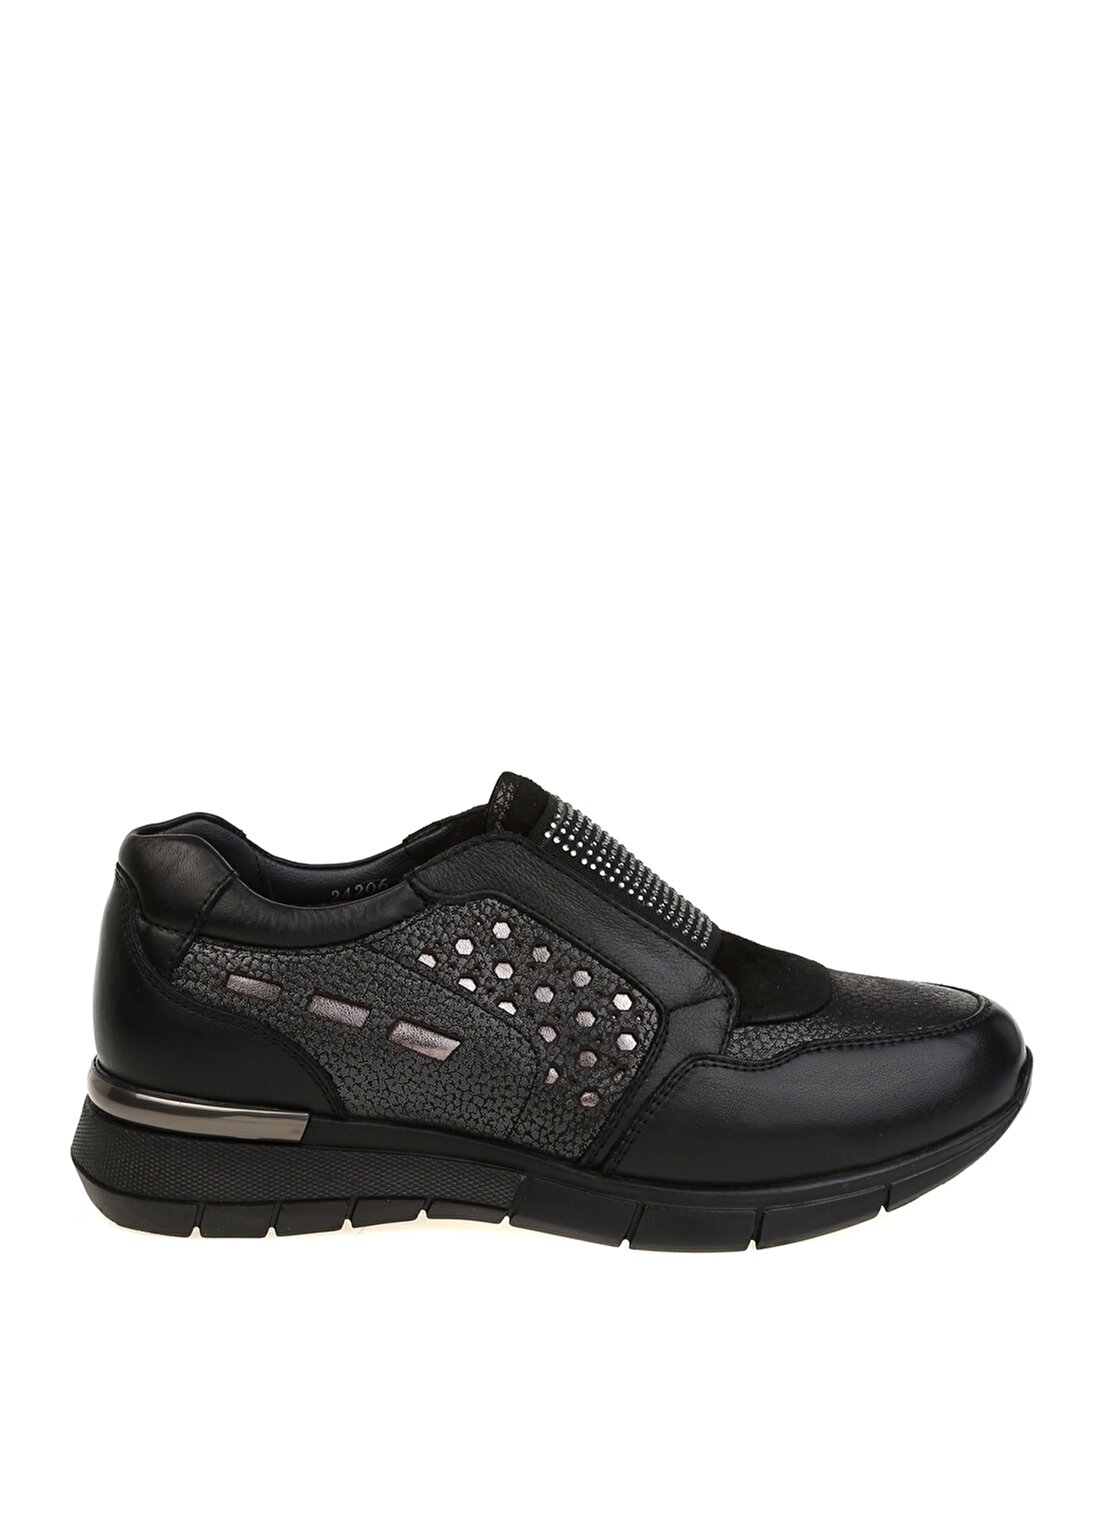 Forelli 24206-G Düz Topuk Taş İşlemeli Deri Siyah Kadın Ayakkabı